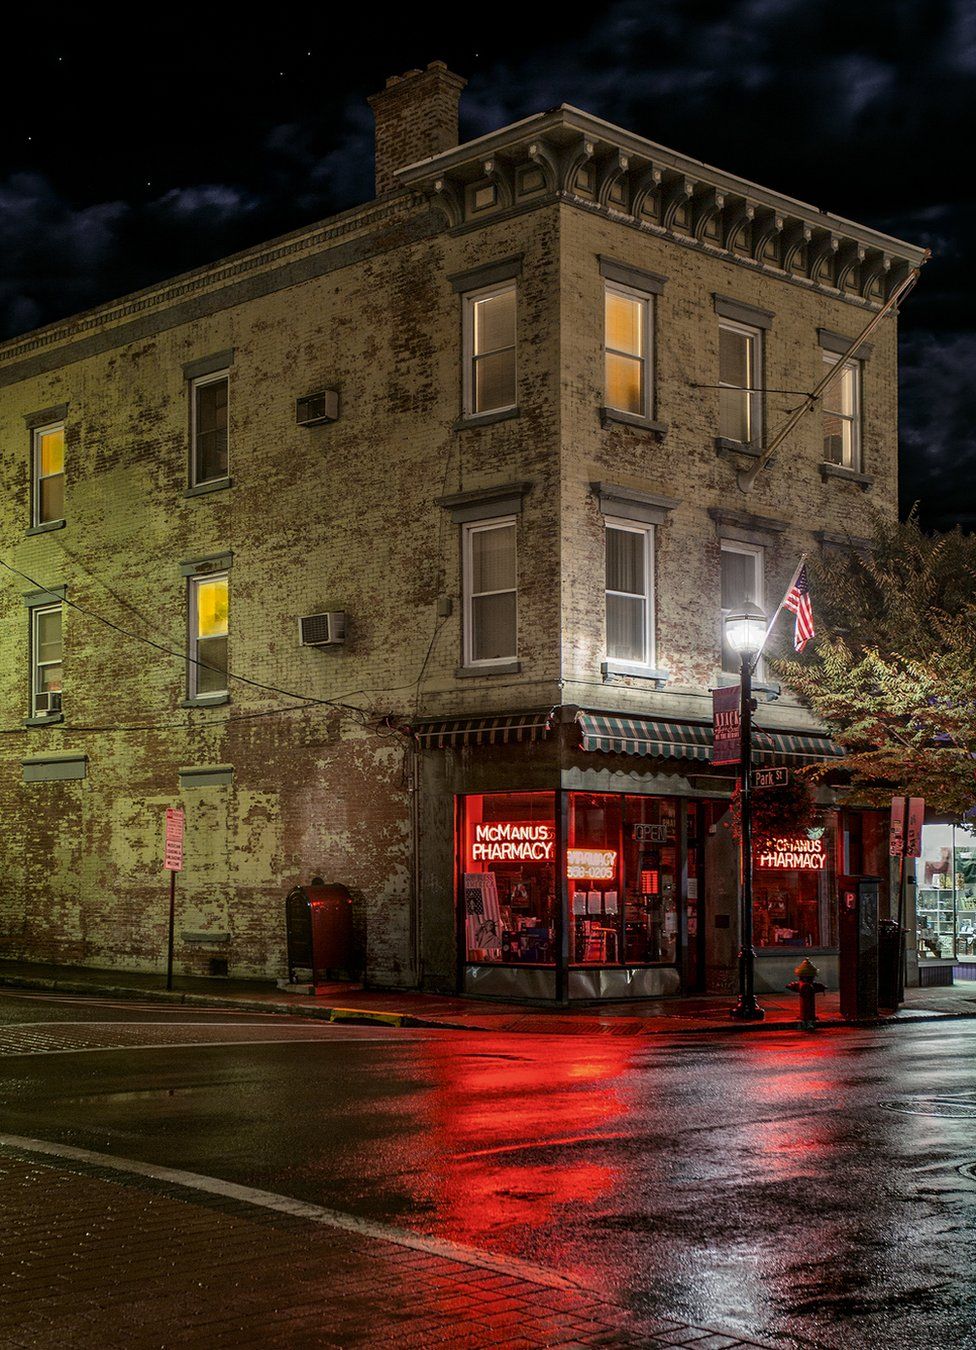 Ночной вид на закрытую аптеку с красным неоновым вздохом в окне